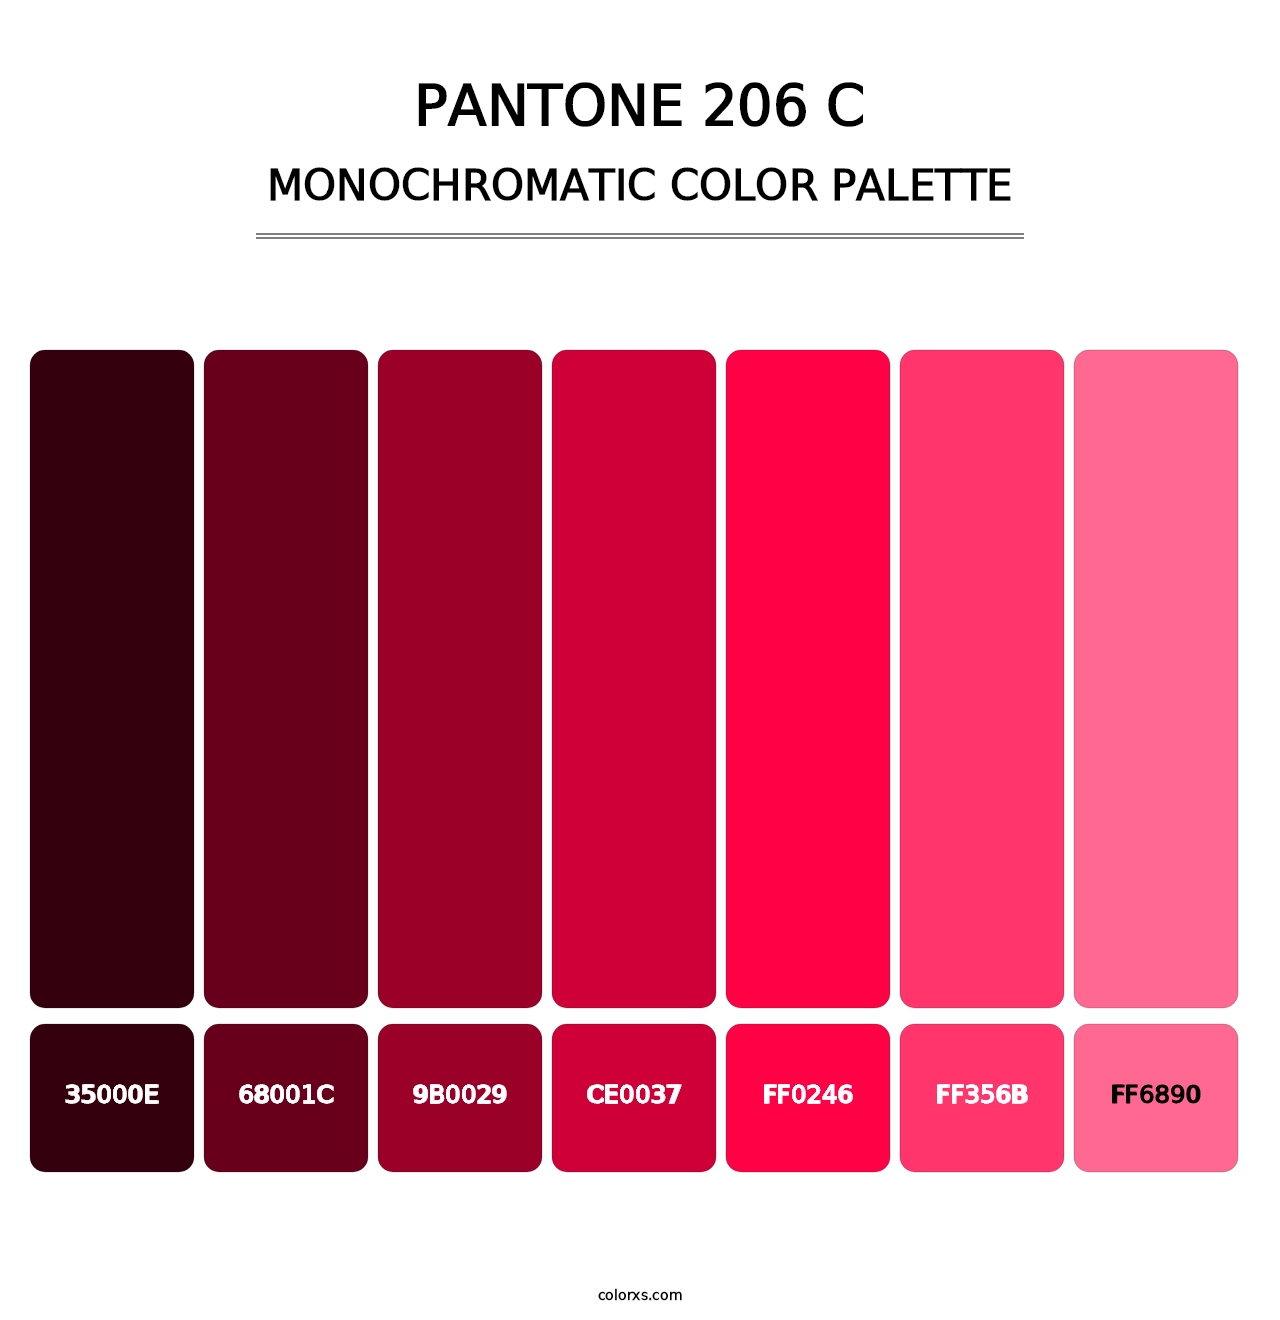 PANTONE 206 C - Monochromatic Color Palette